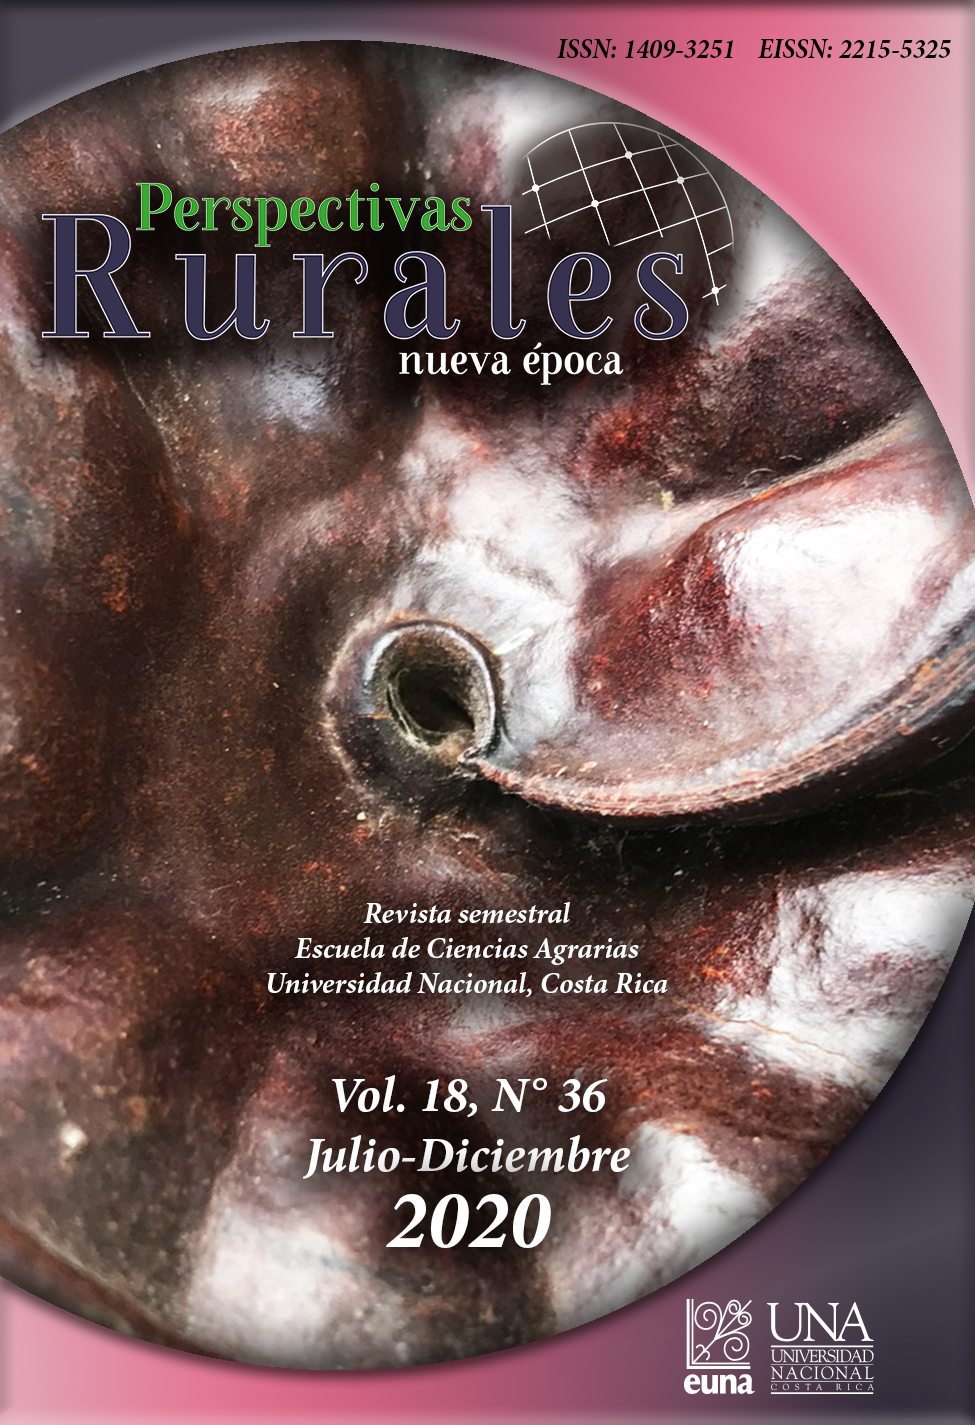 					Ver Vol. 18 Núm. 36 (2020): Revista Perspectivas Rurales Vol. 18 Núm. 36 (Julio - Diciembre 2020)
				